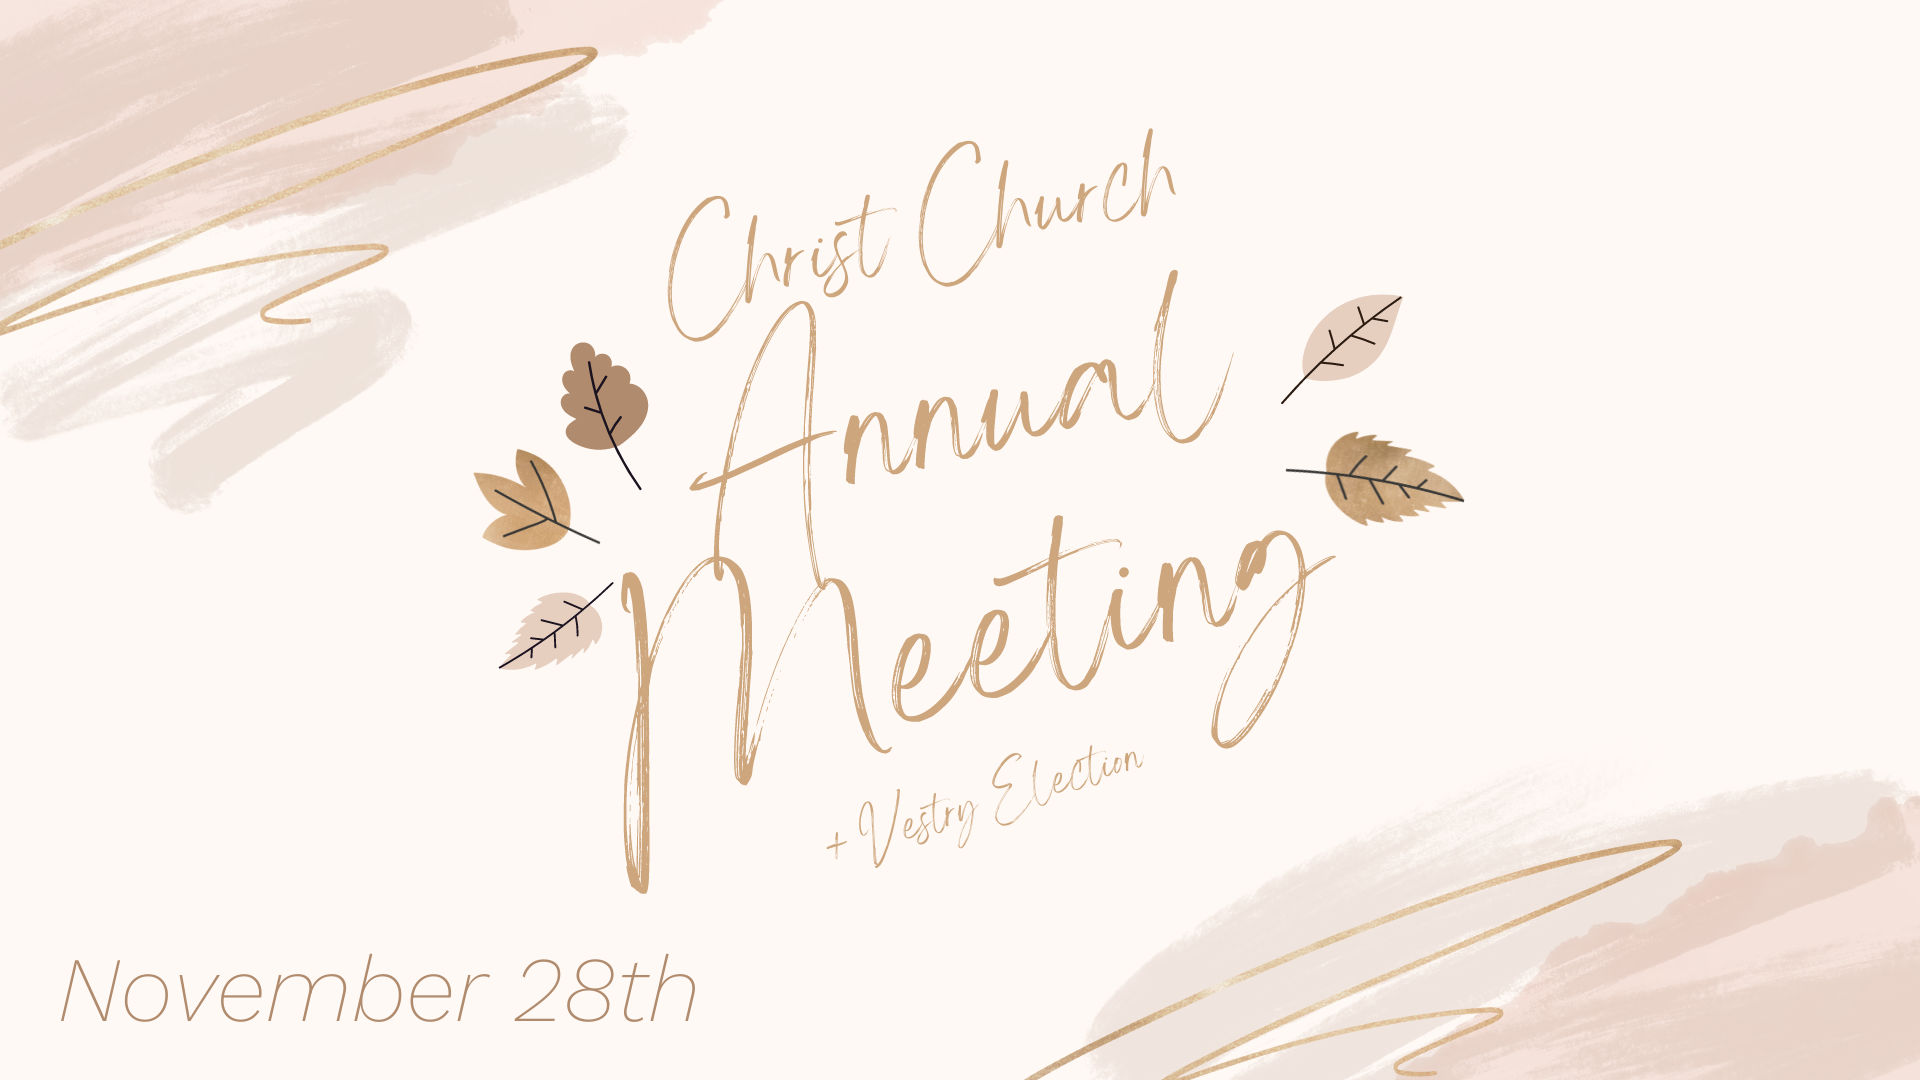 church annual meeting